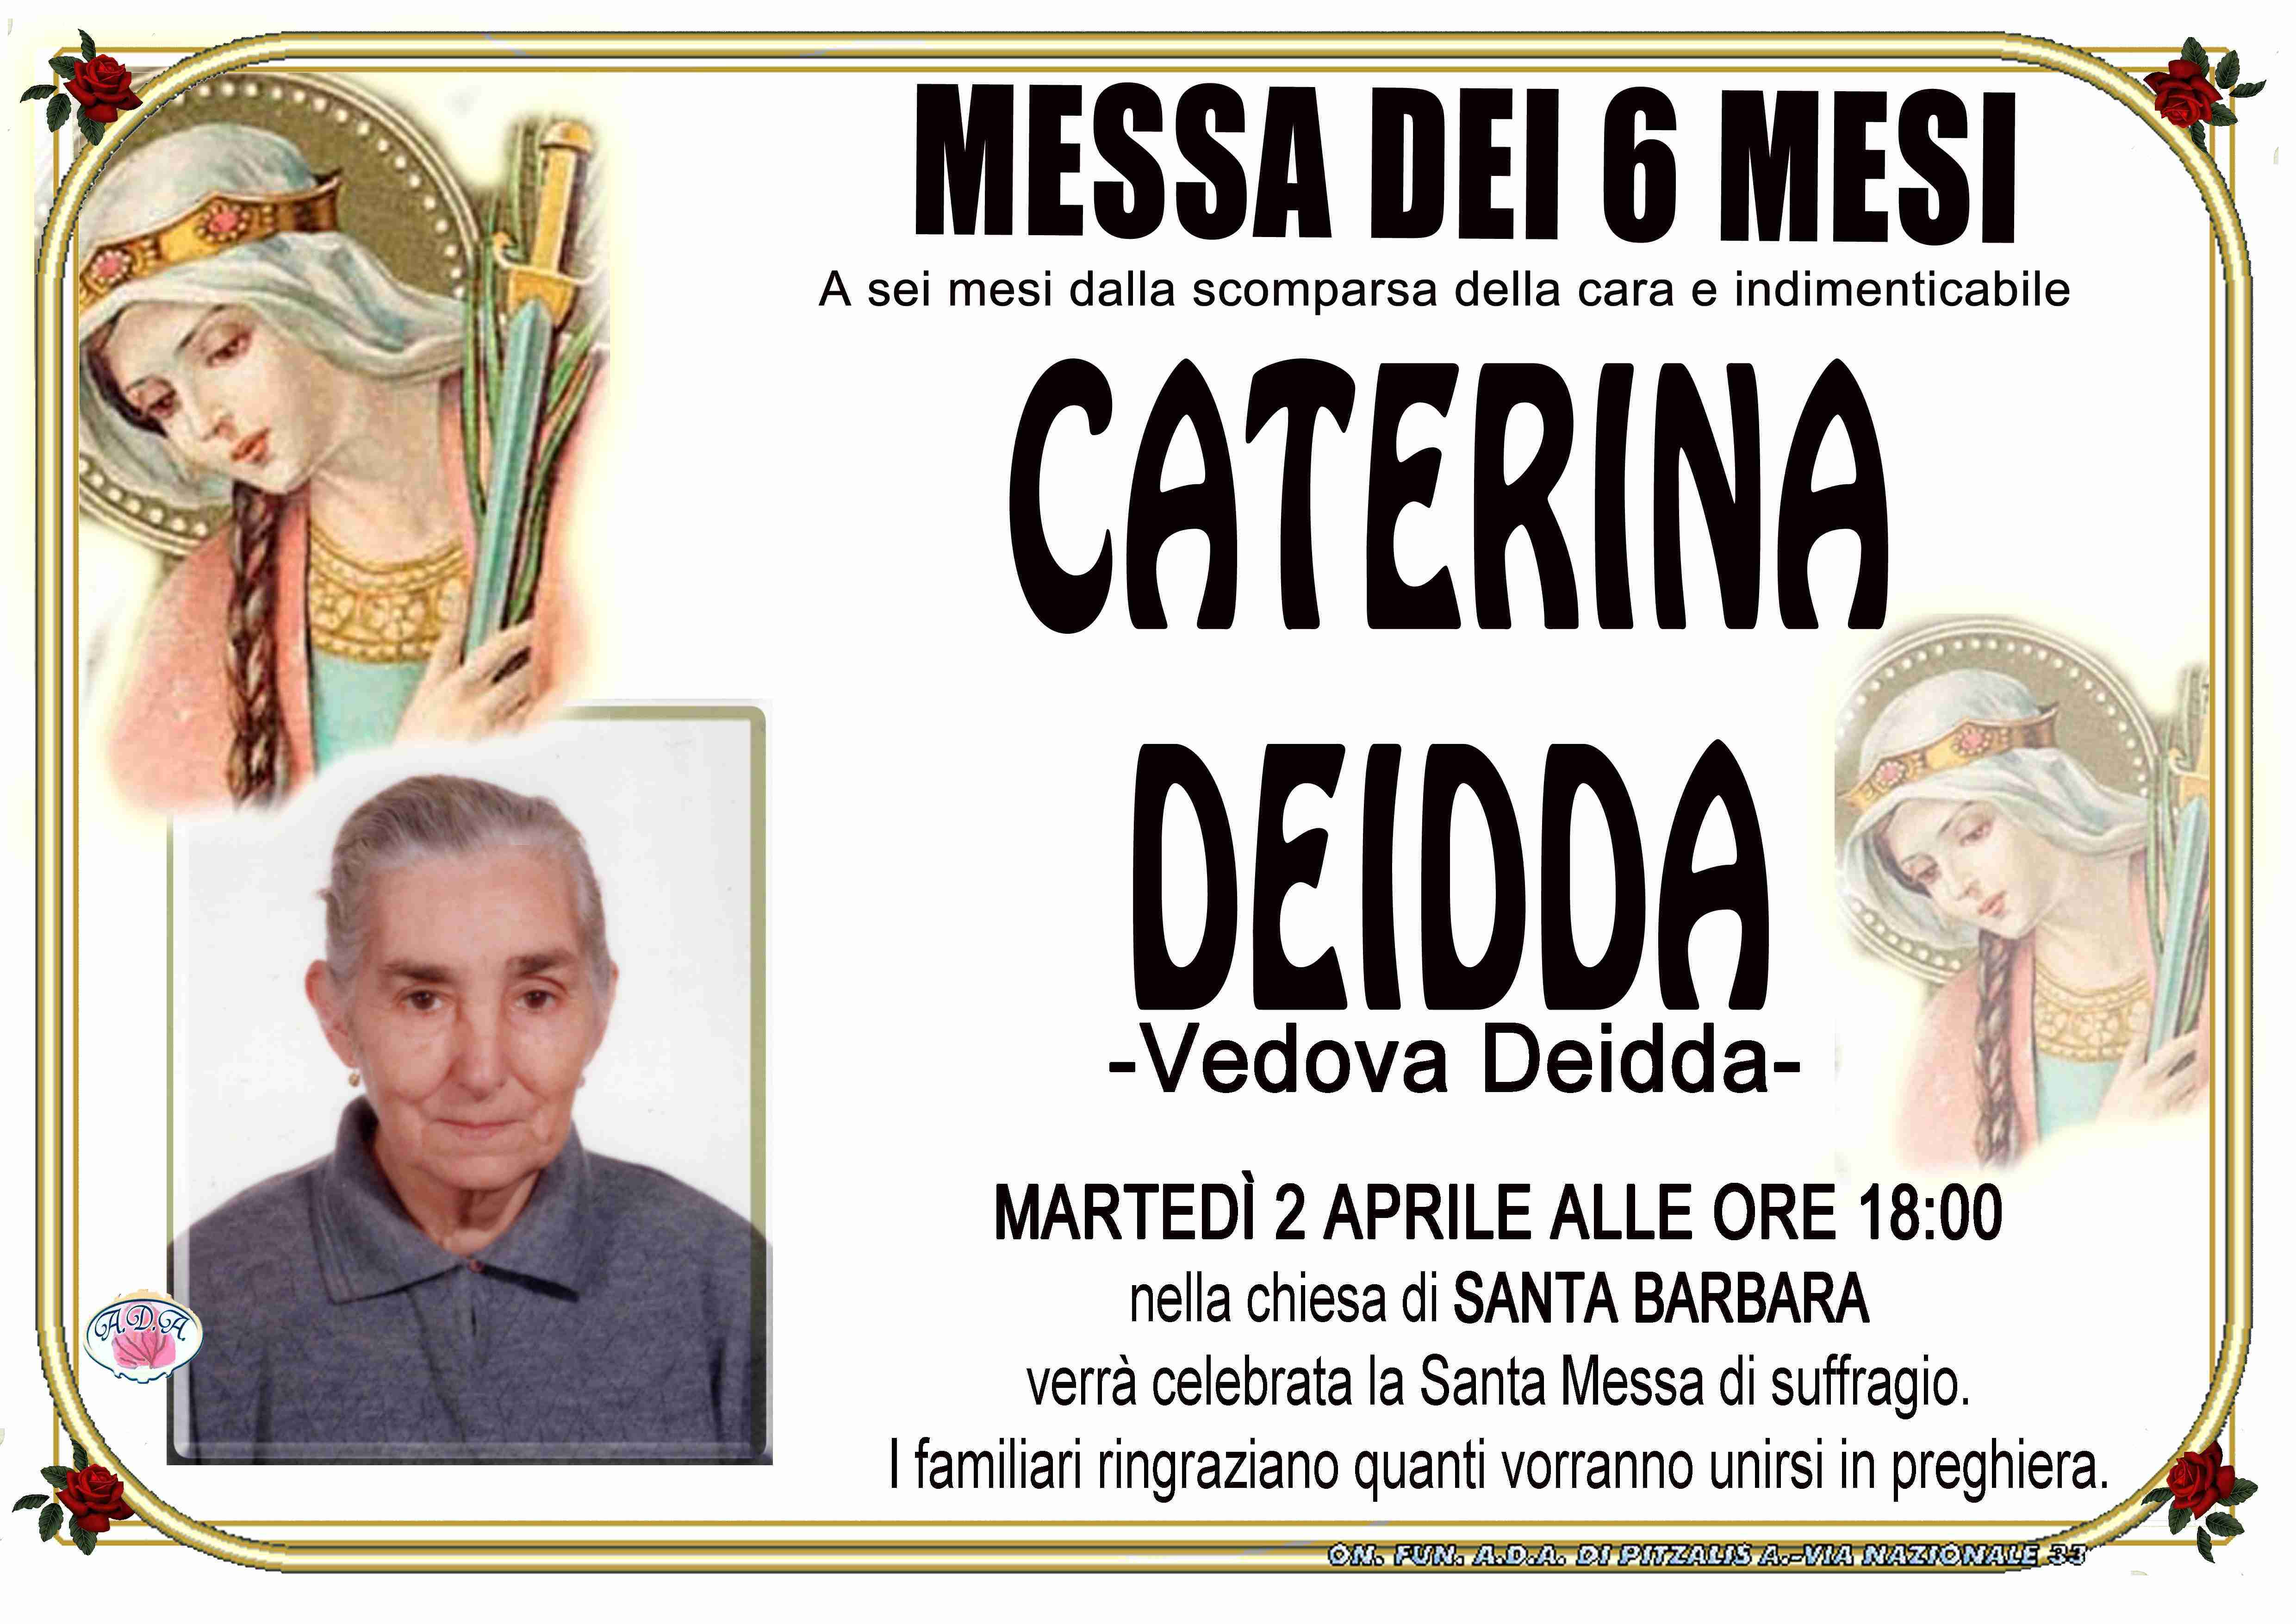 Caterina Deidda